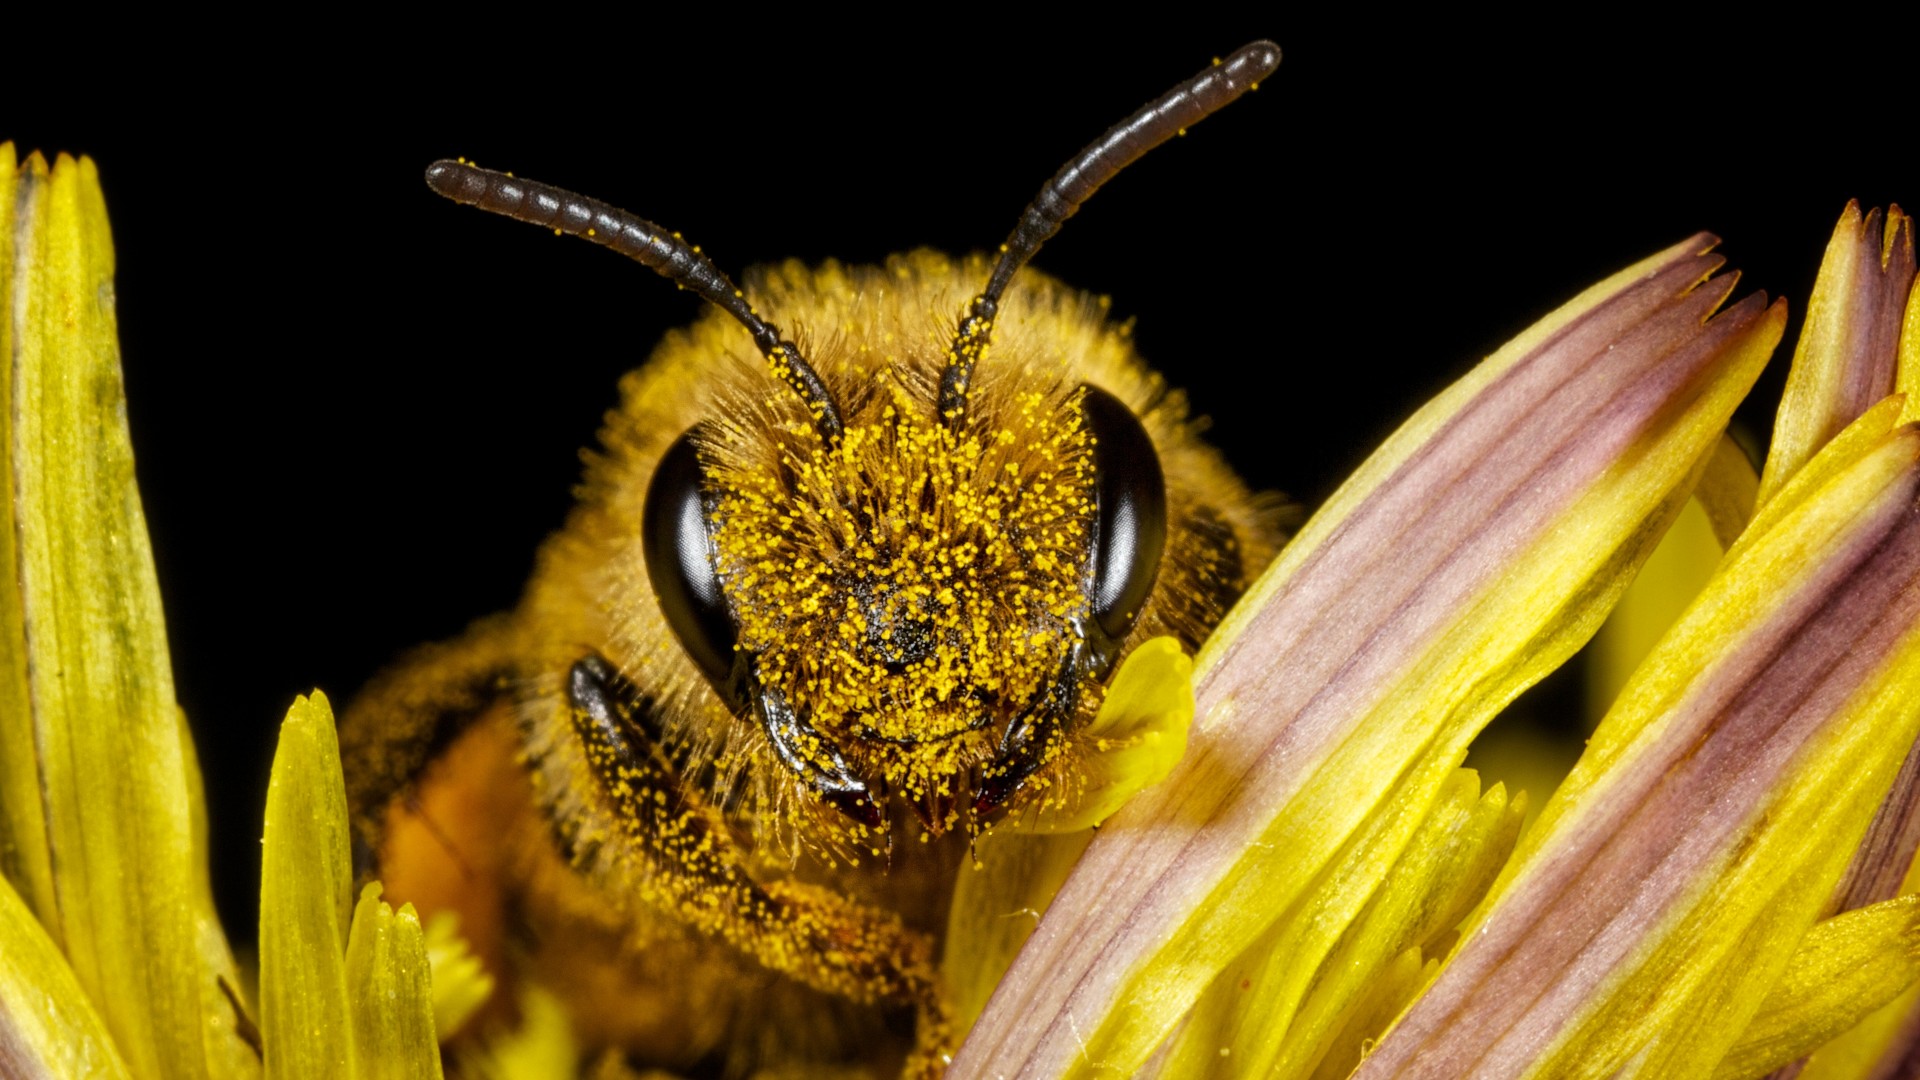 نمای نزدیک از زنبور عسل (apis mellifera).  زنبور عسل رو به دوربین است و با گرده های زرد پوشیده شده است.  روی گل صورتی و زرد نشسته است.